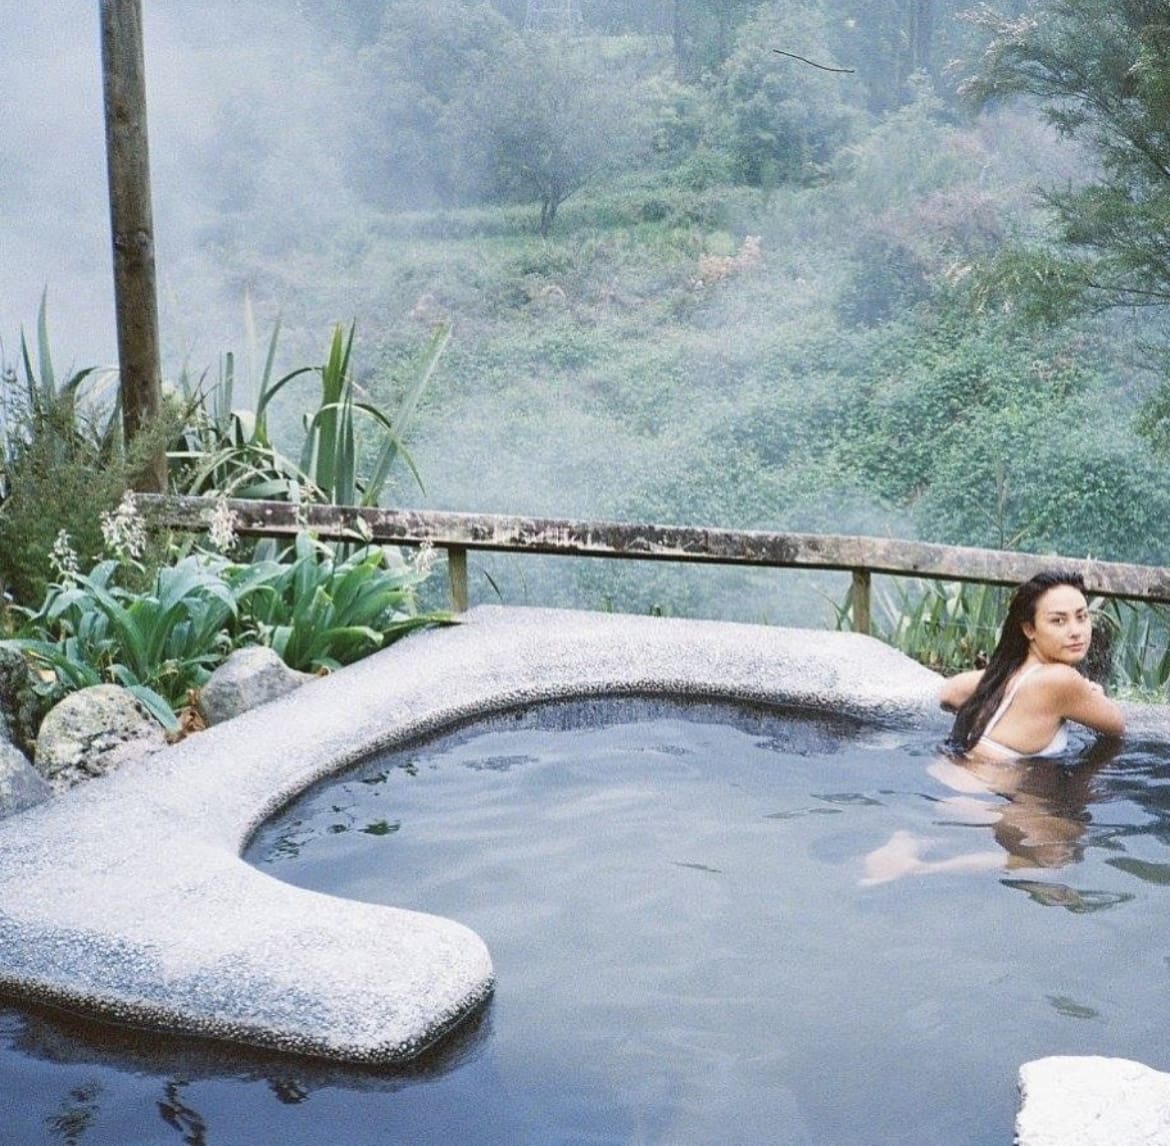 Waikite Valley Thermal Pools, Rotorua